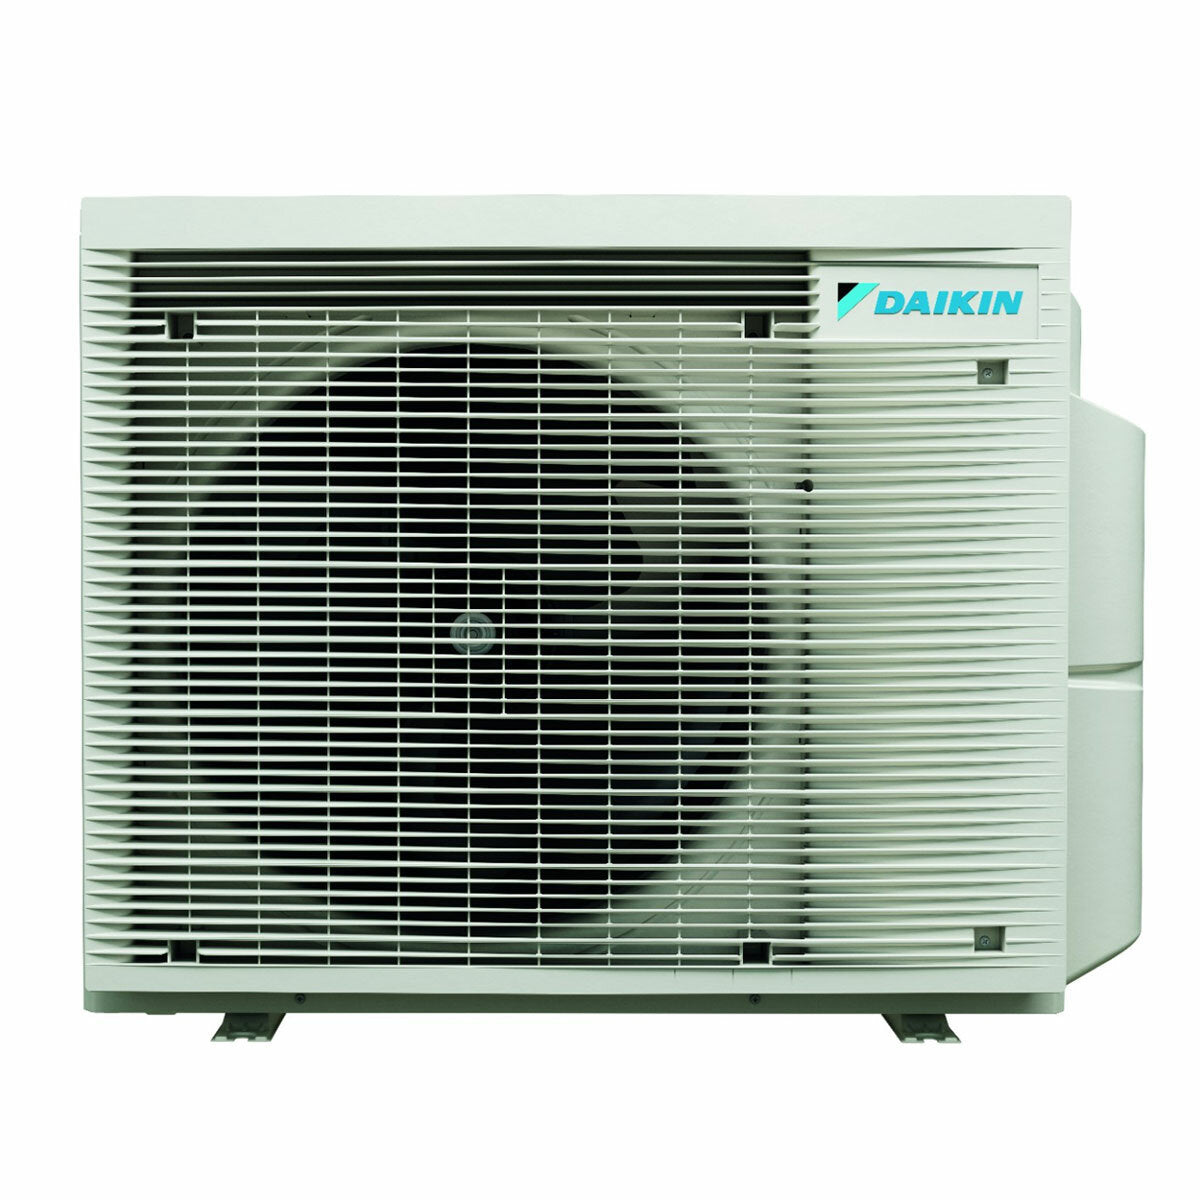 Système de climatisation et d'eau chaude sanitaire double split Daikin Multi+ - Unités intérieures Perfera All Seasons 12000+12000 BTU - Réservoir 120 l